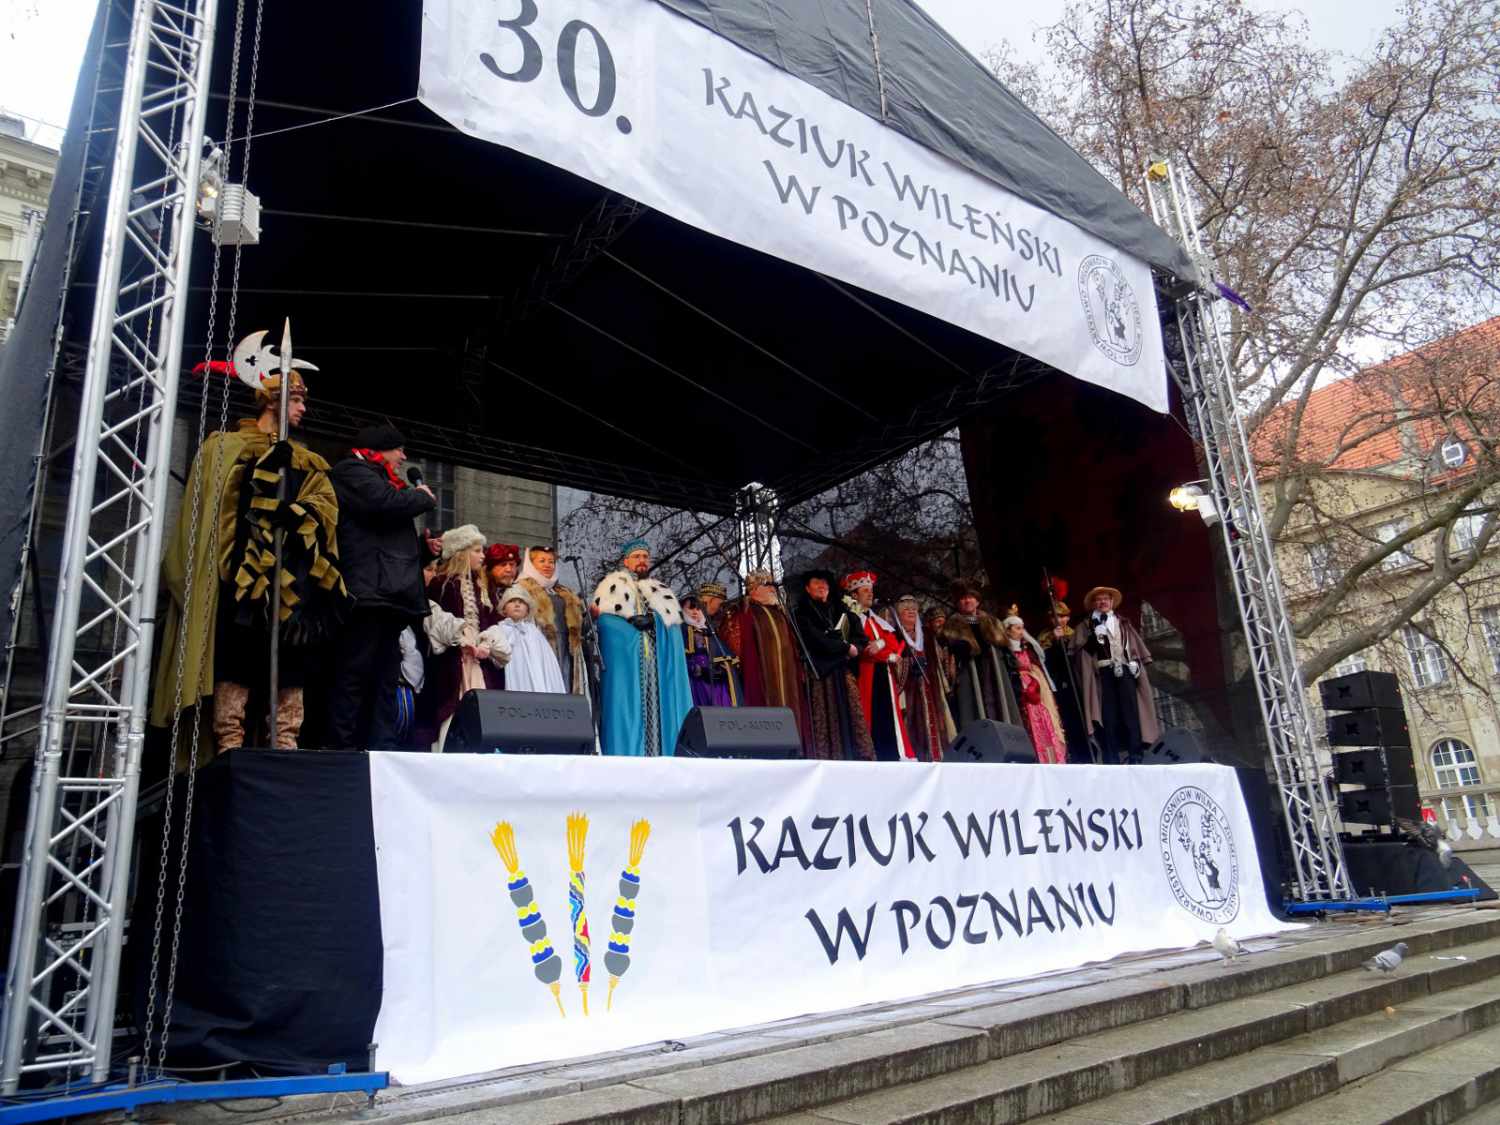 Kaziuk wileński w Poznaniu.